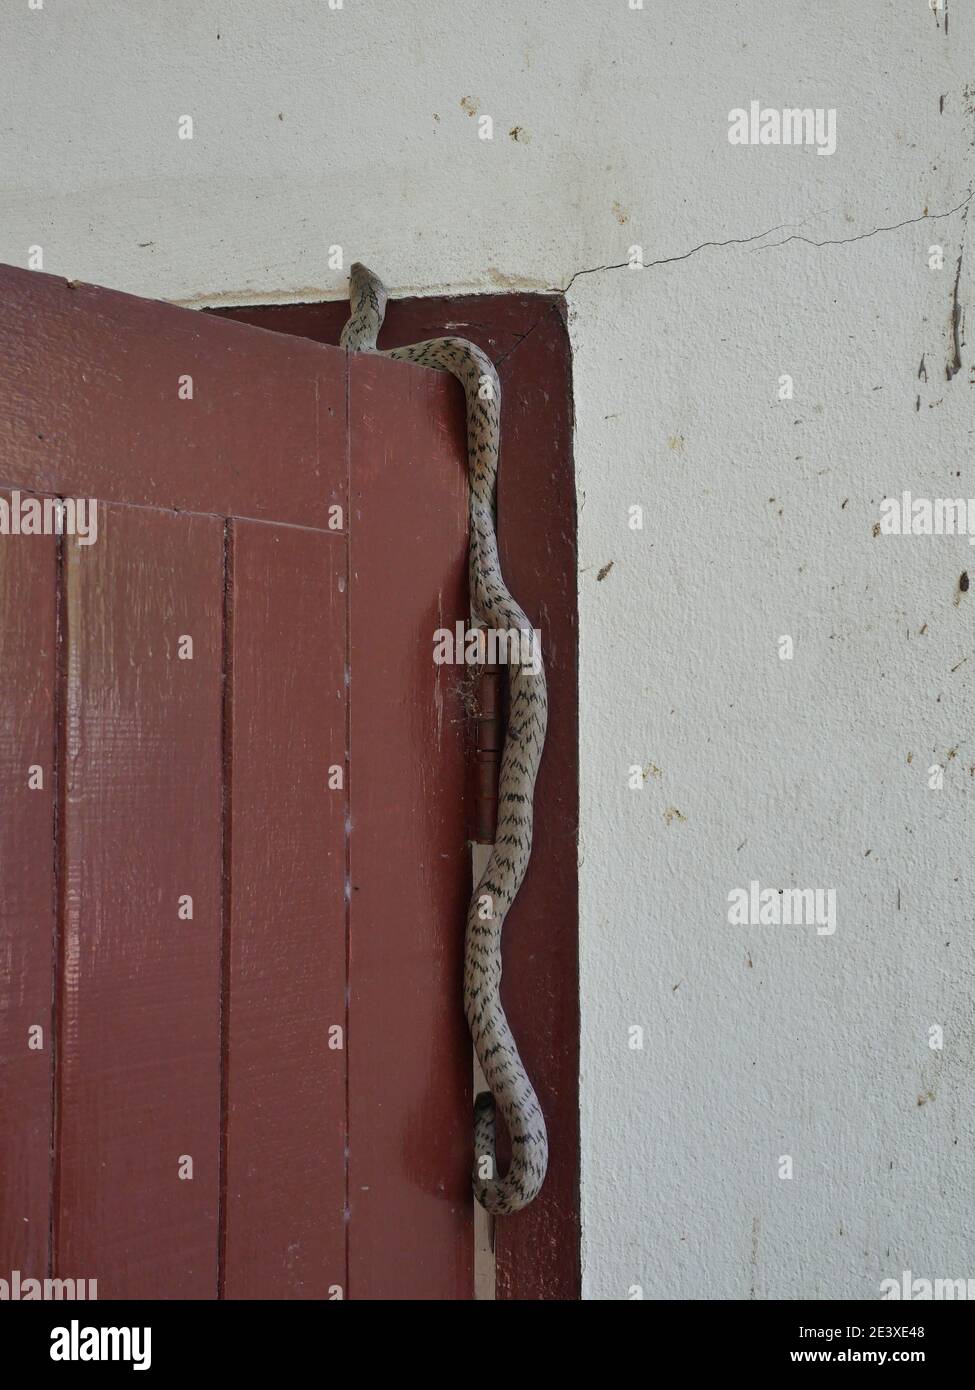 Die gebänderte kukri Schlange ( Oligodon fasciolatus ) auf roter Holztür an alter grauer Wand, schwarze Streifen auf dem Körper von grauem Reptil, giftiges Reptil Stockfoto